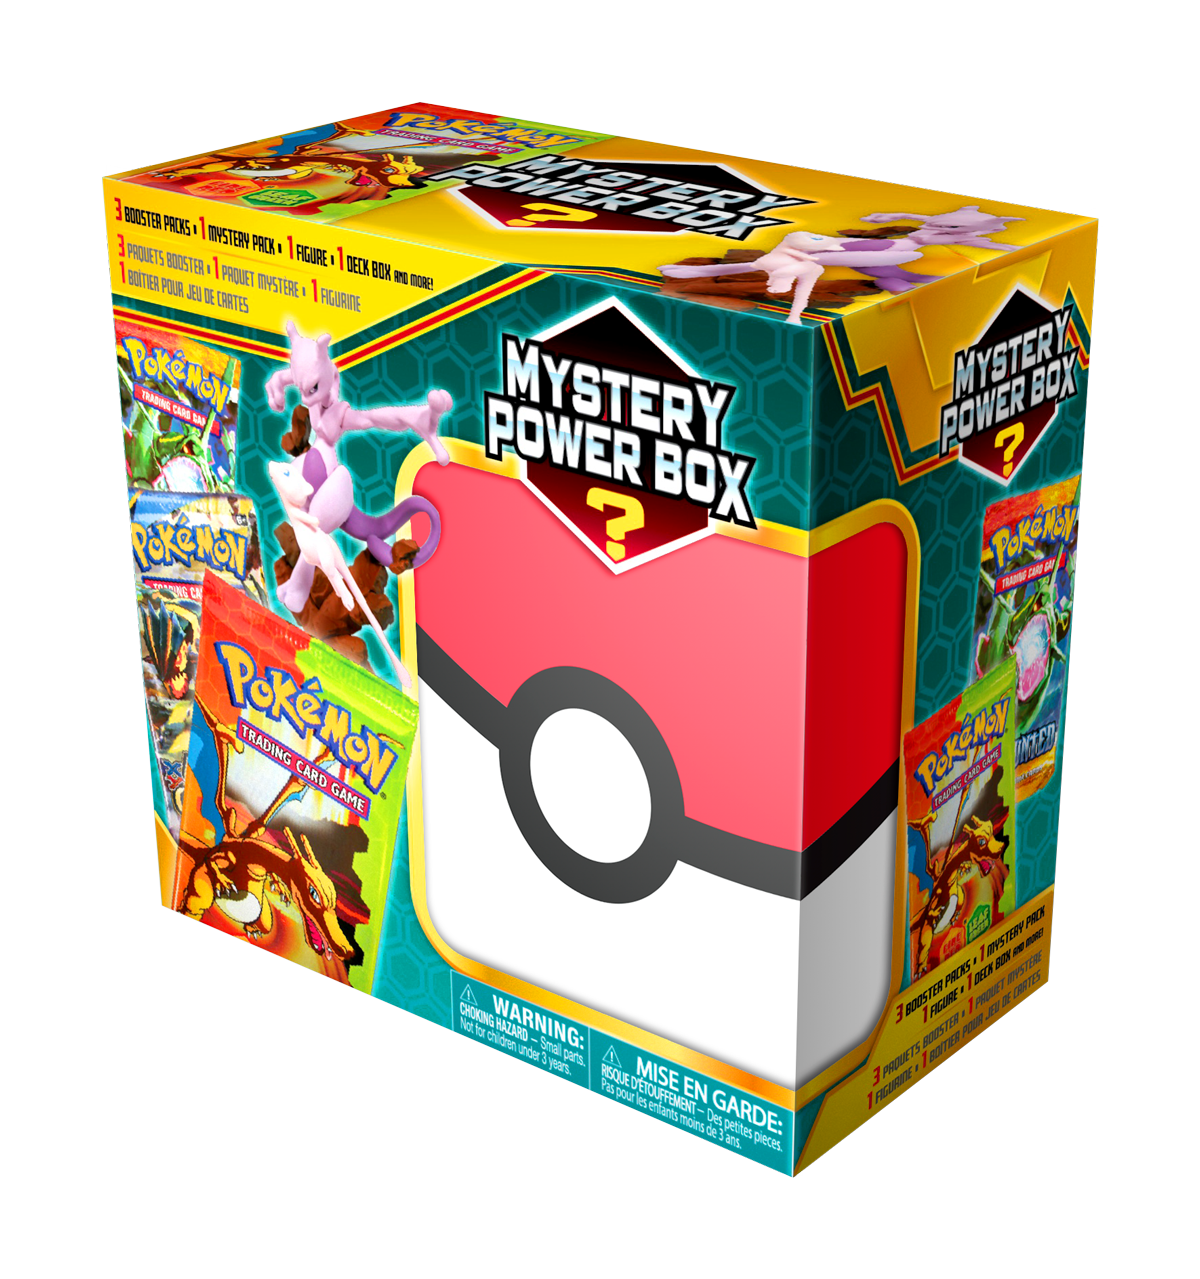 Pokemon Mystery Box in Pokemon Cards 